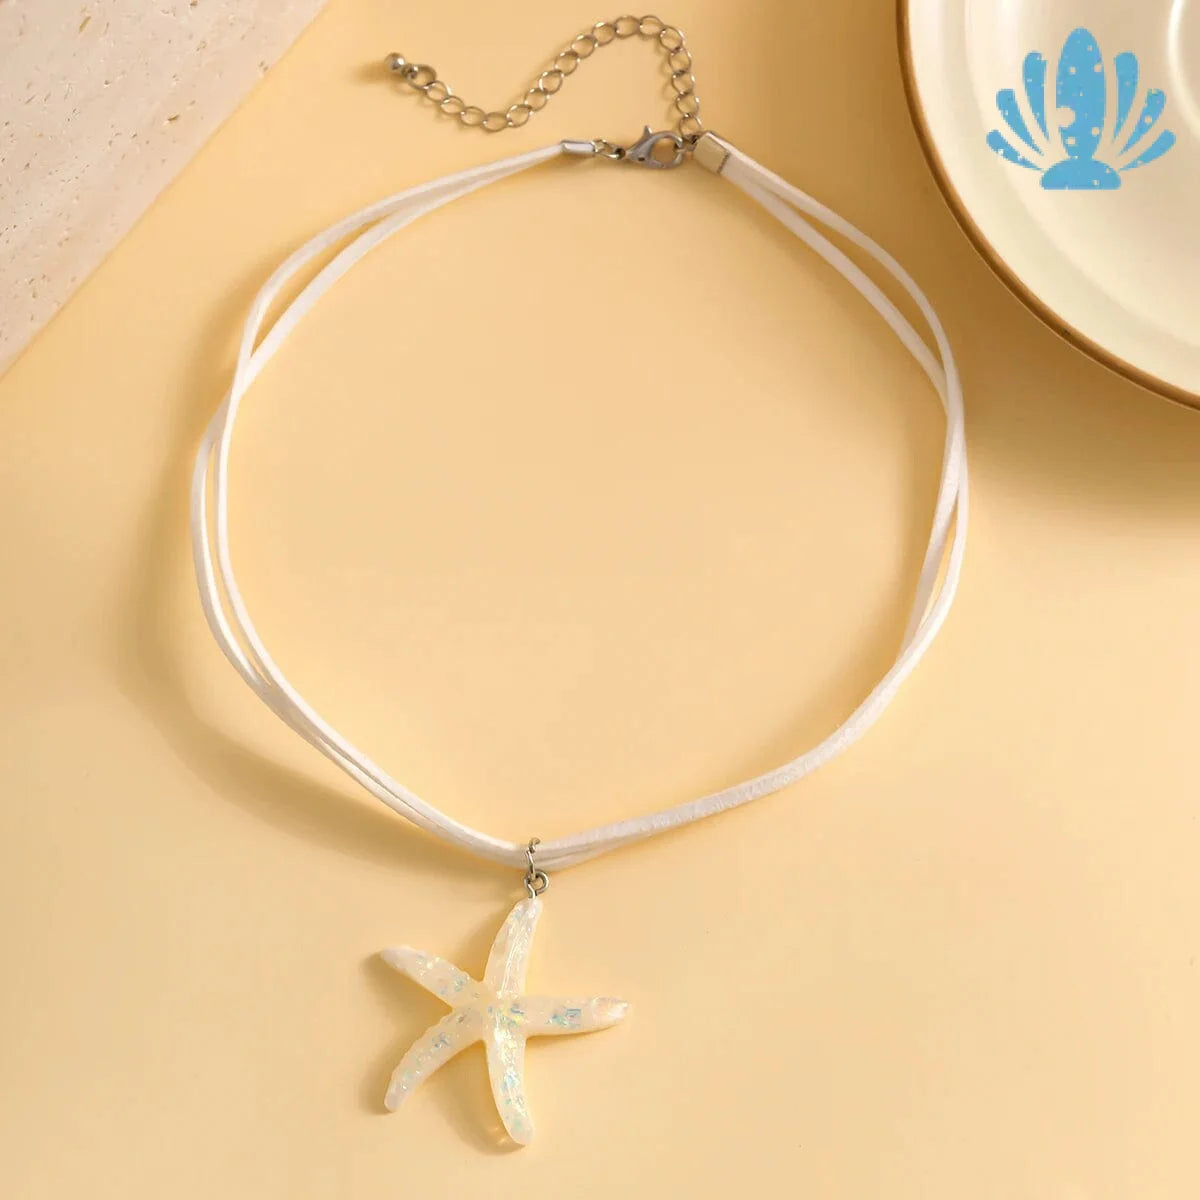 Starfish choker necklace